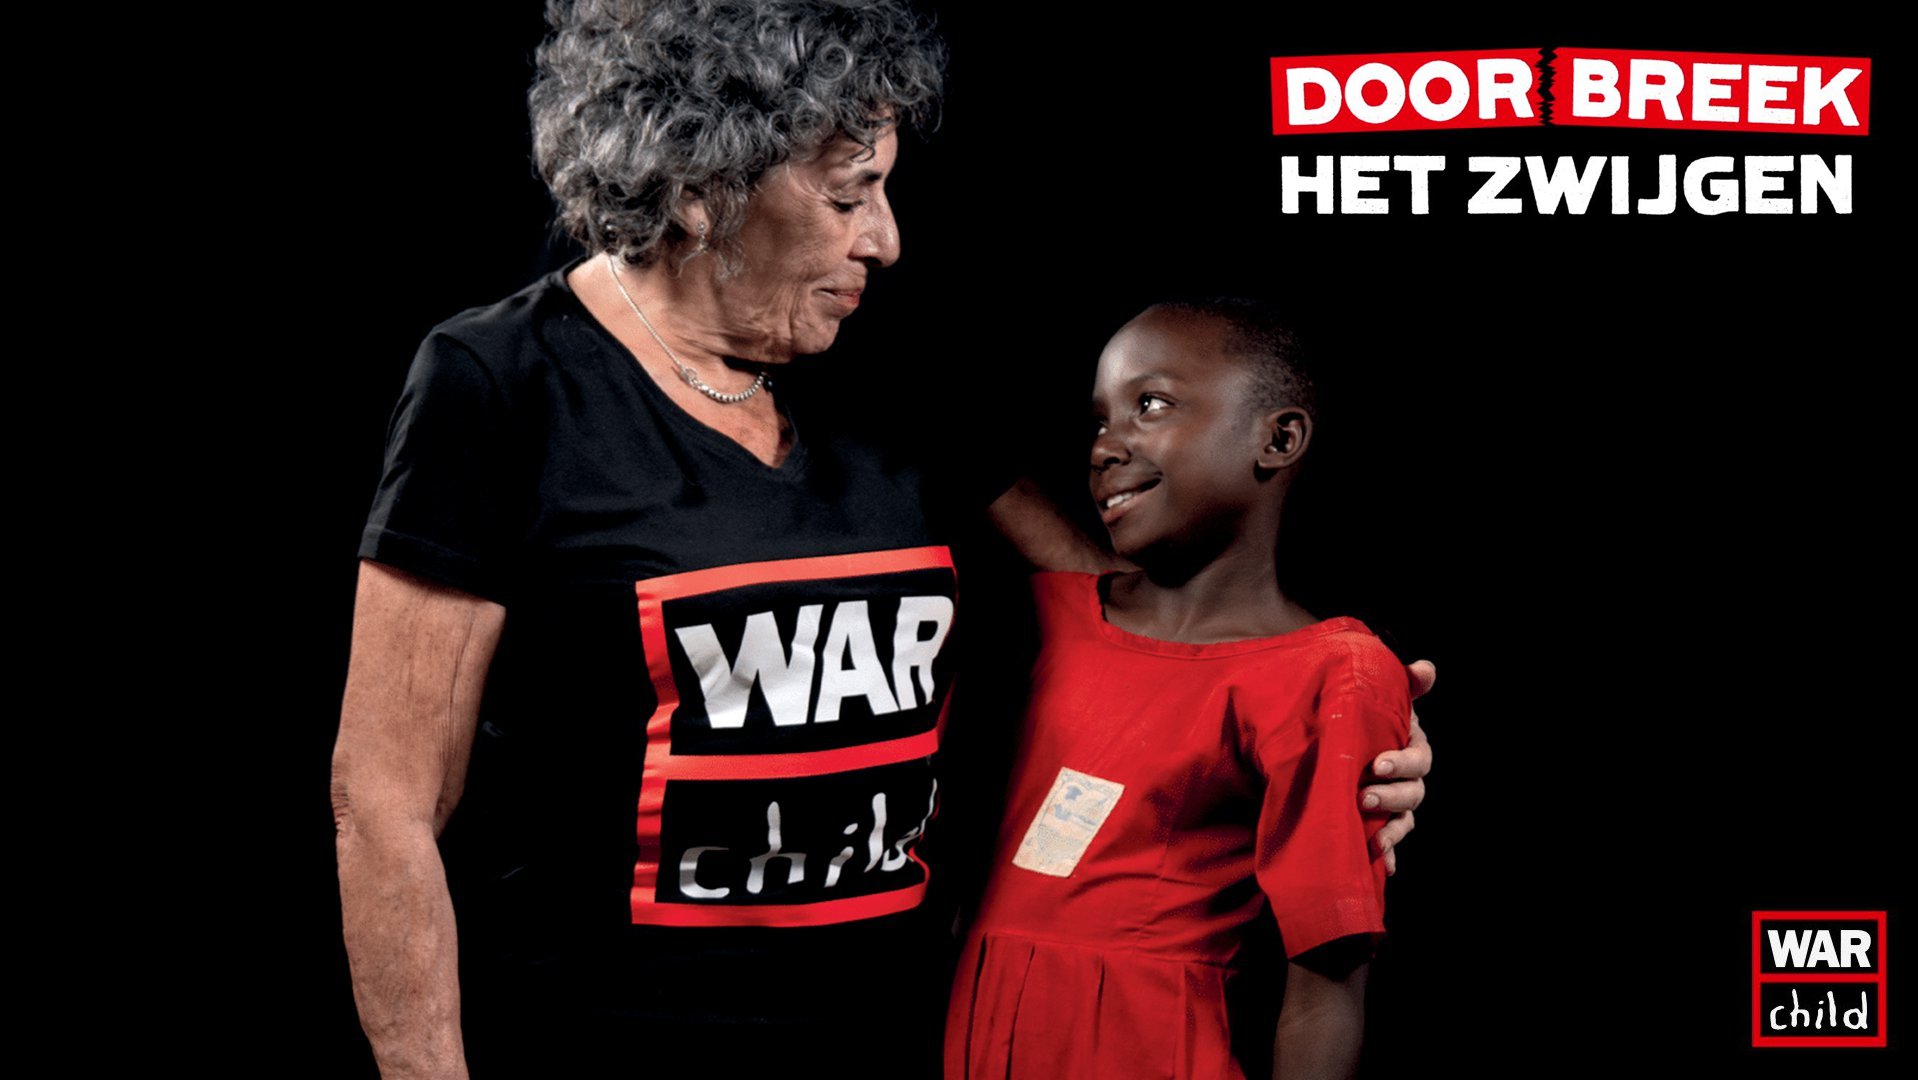 Doorbreek het zwijgen campagne 75 jaar oorlog War Child met Hanneke Groenteman